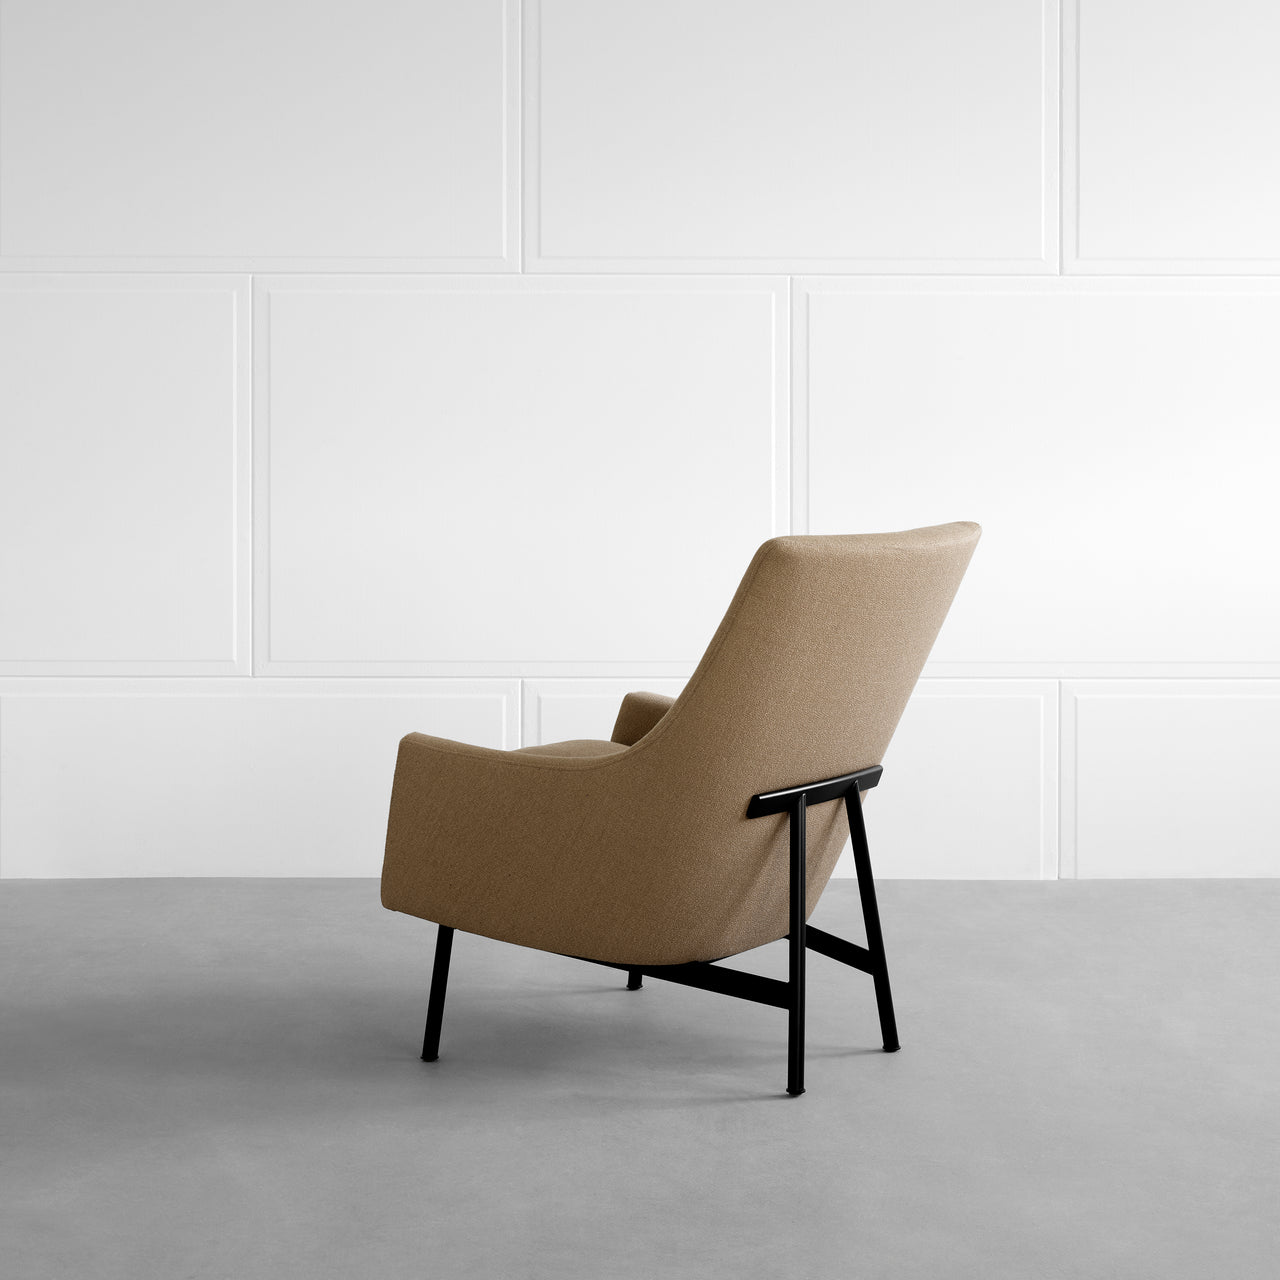 A-Chair: Metal Base